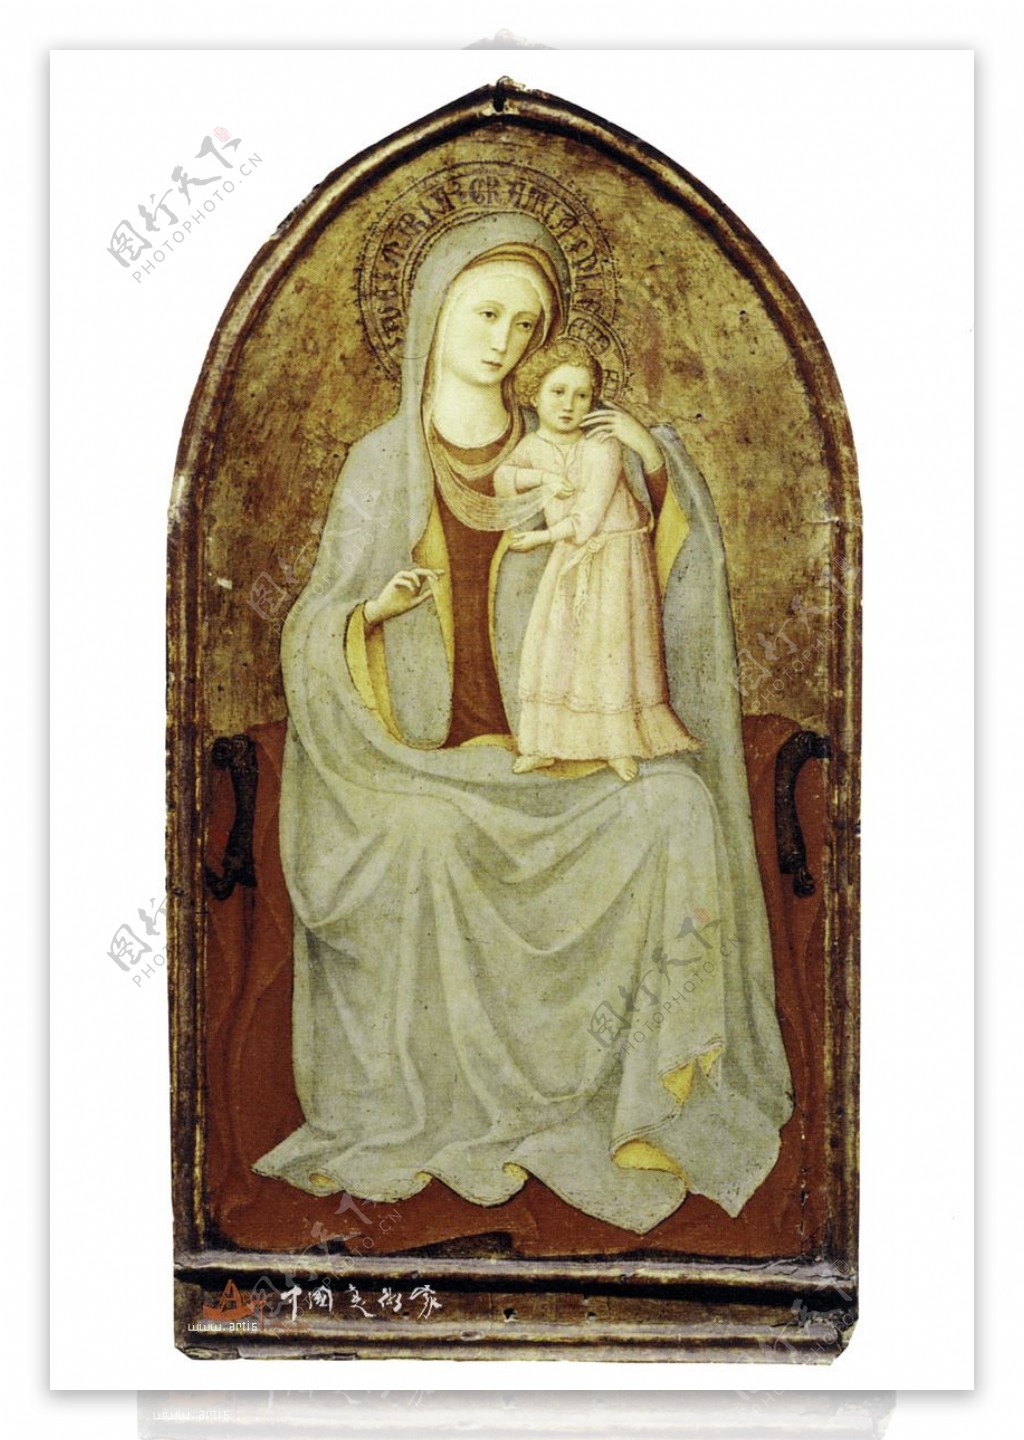 圣母玛利亚怀抱婴儿坐在宝座上图片